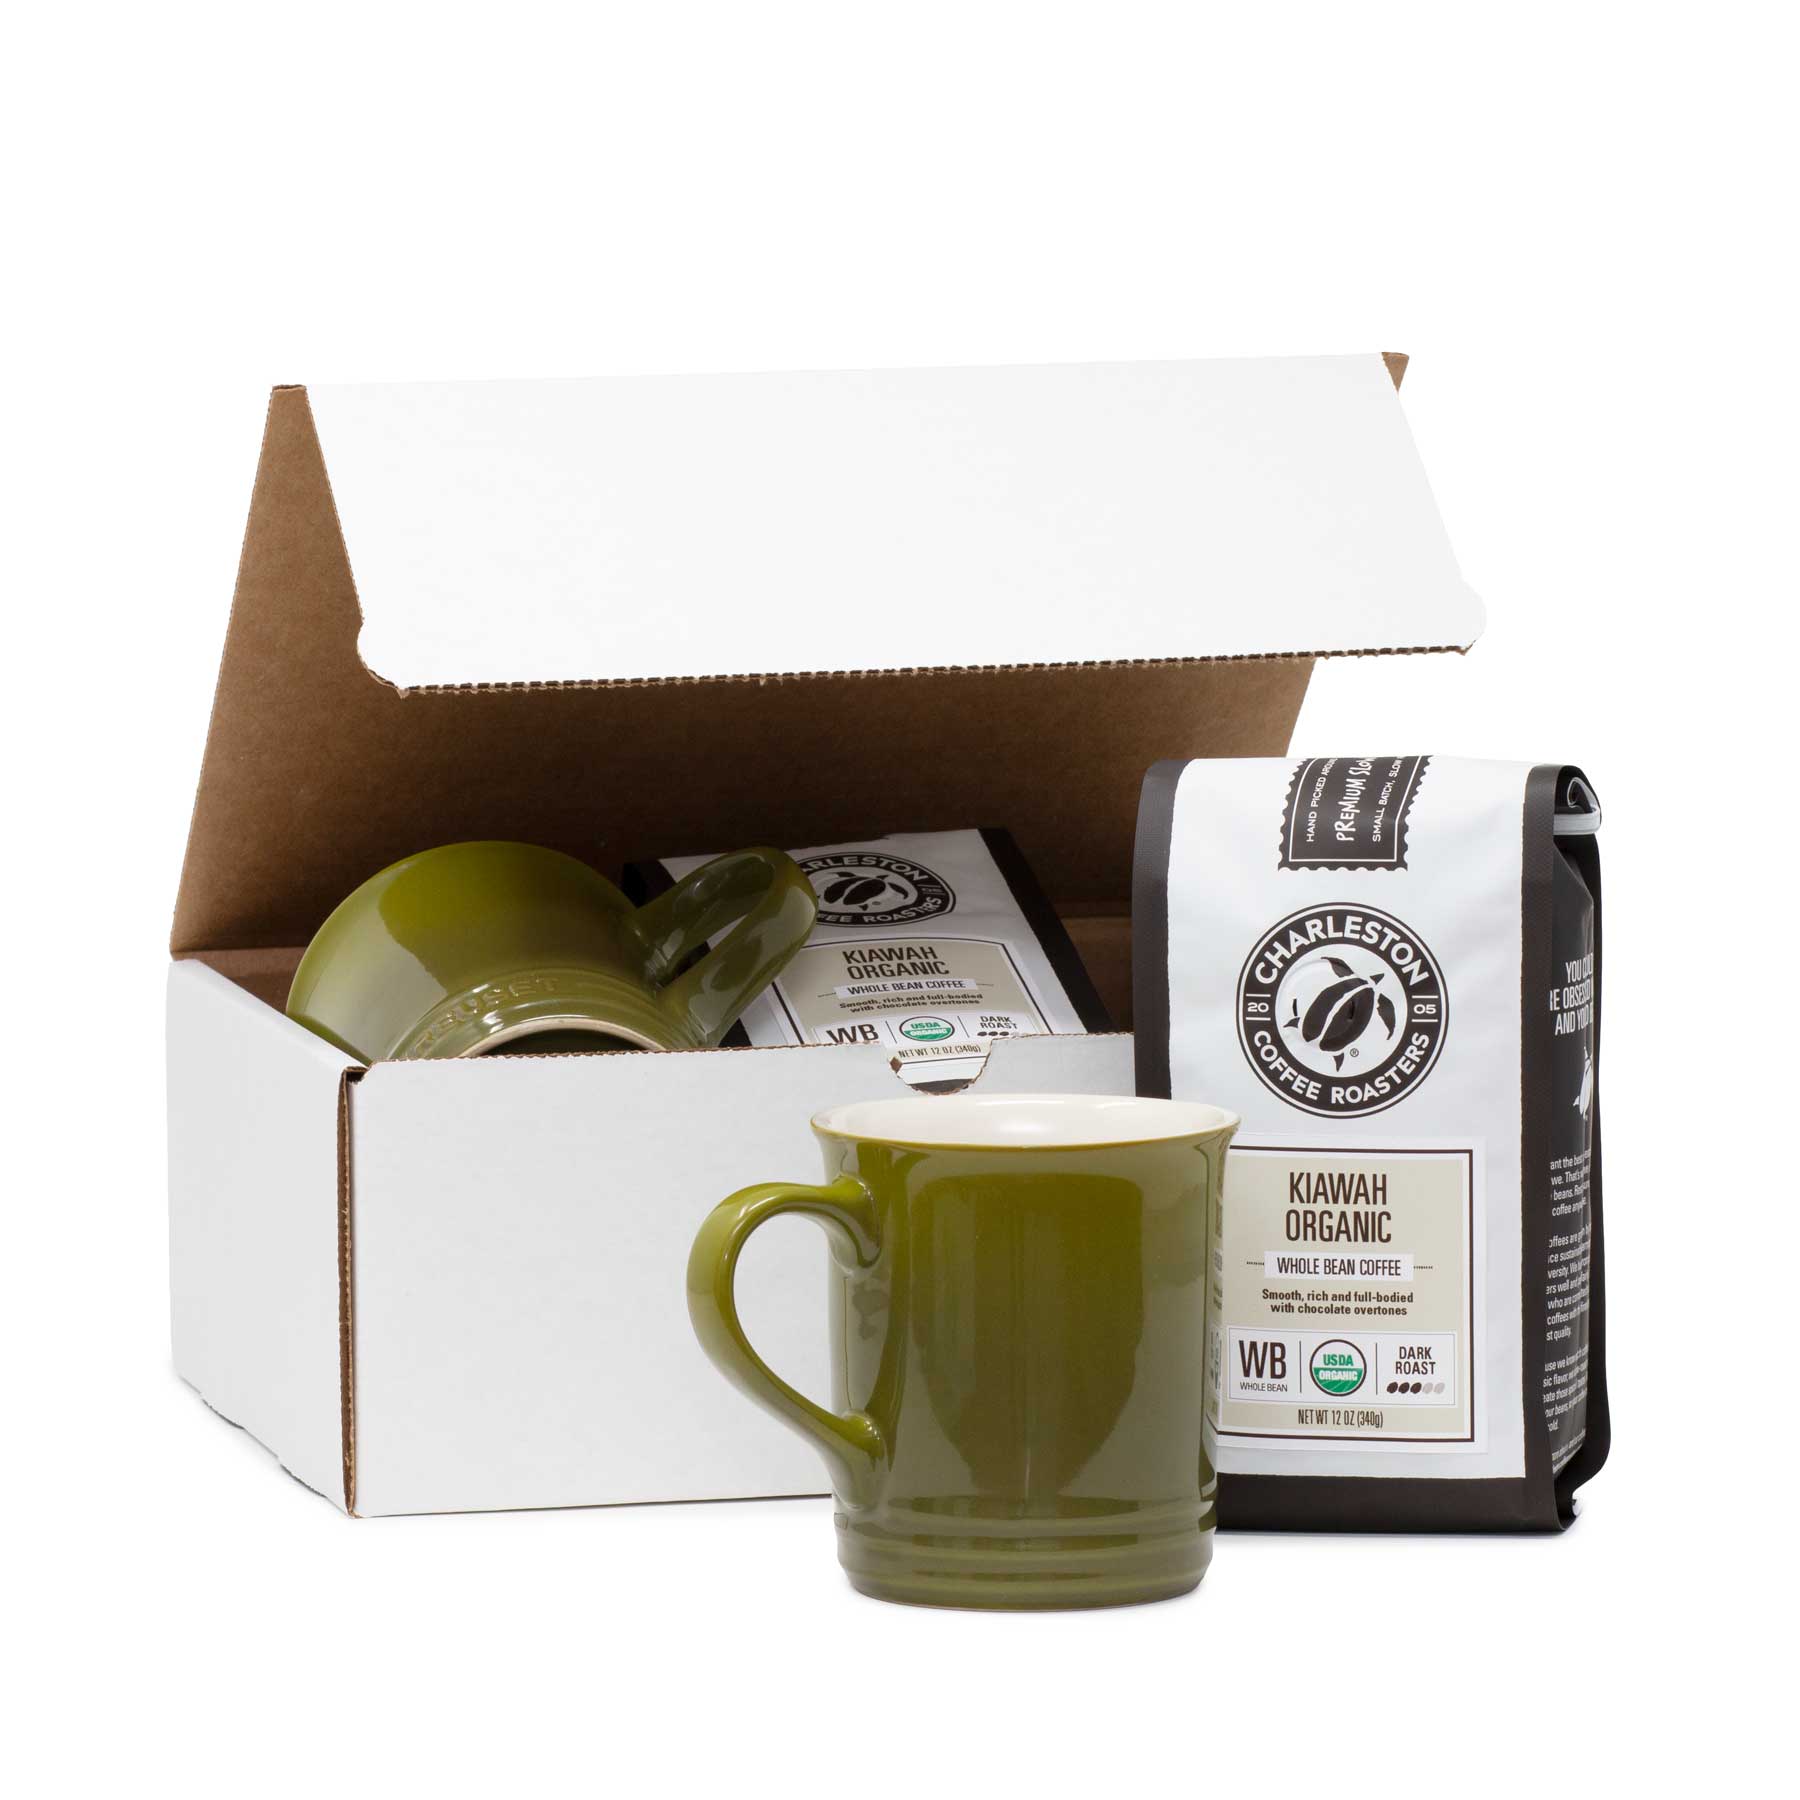 Kiawah Organic Le Creuset olive mug gift set